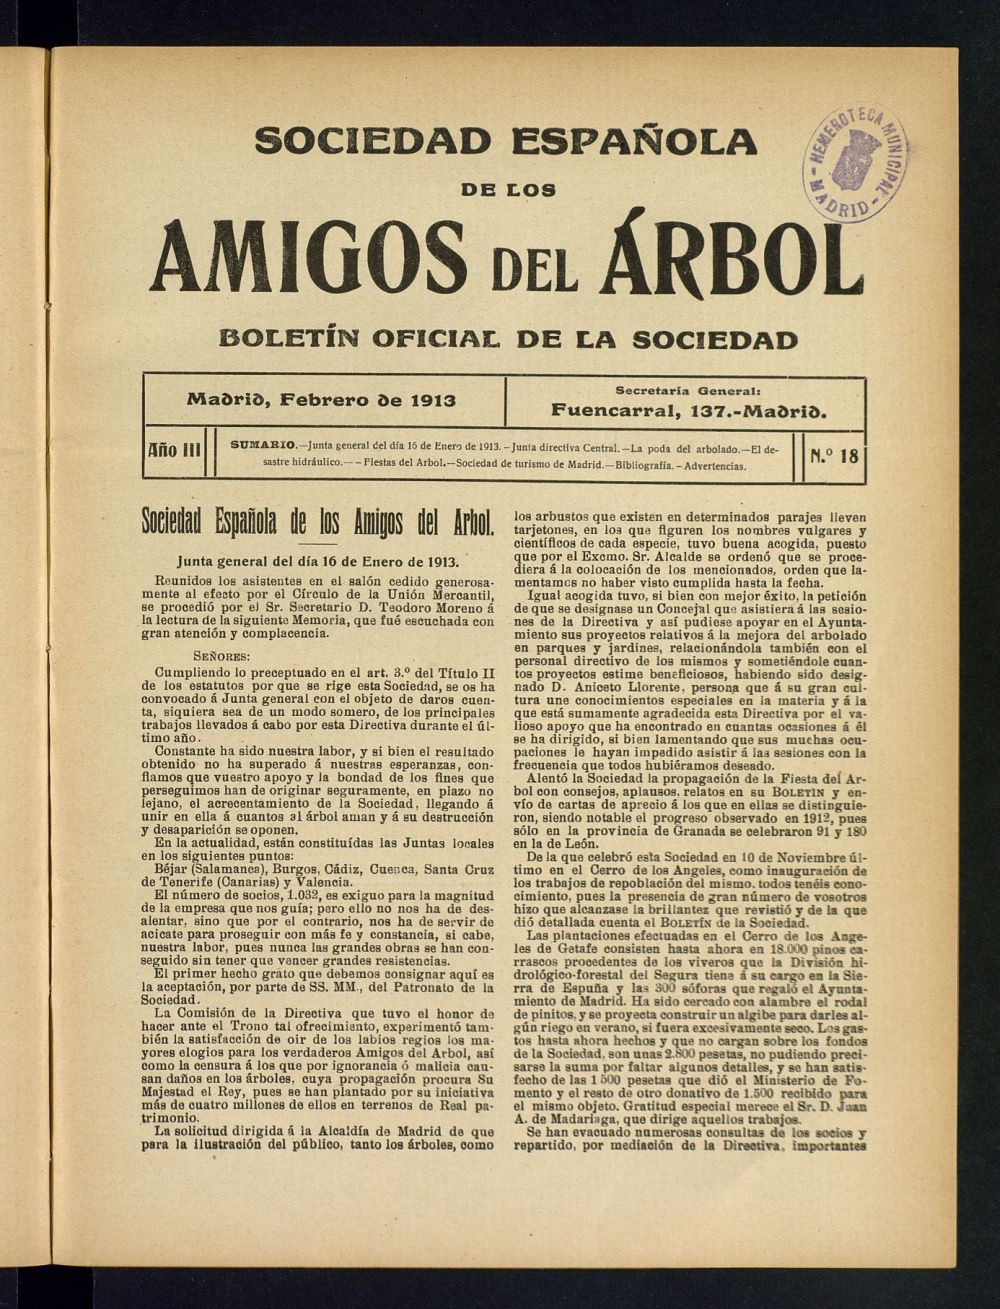 Boletn Comisin organizadora de la Sociedad Espaola de los amigos del rbol de febrero de 1913